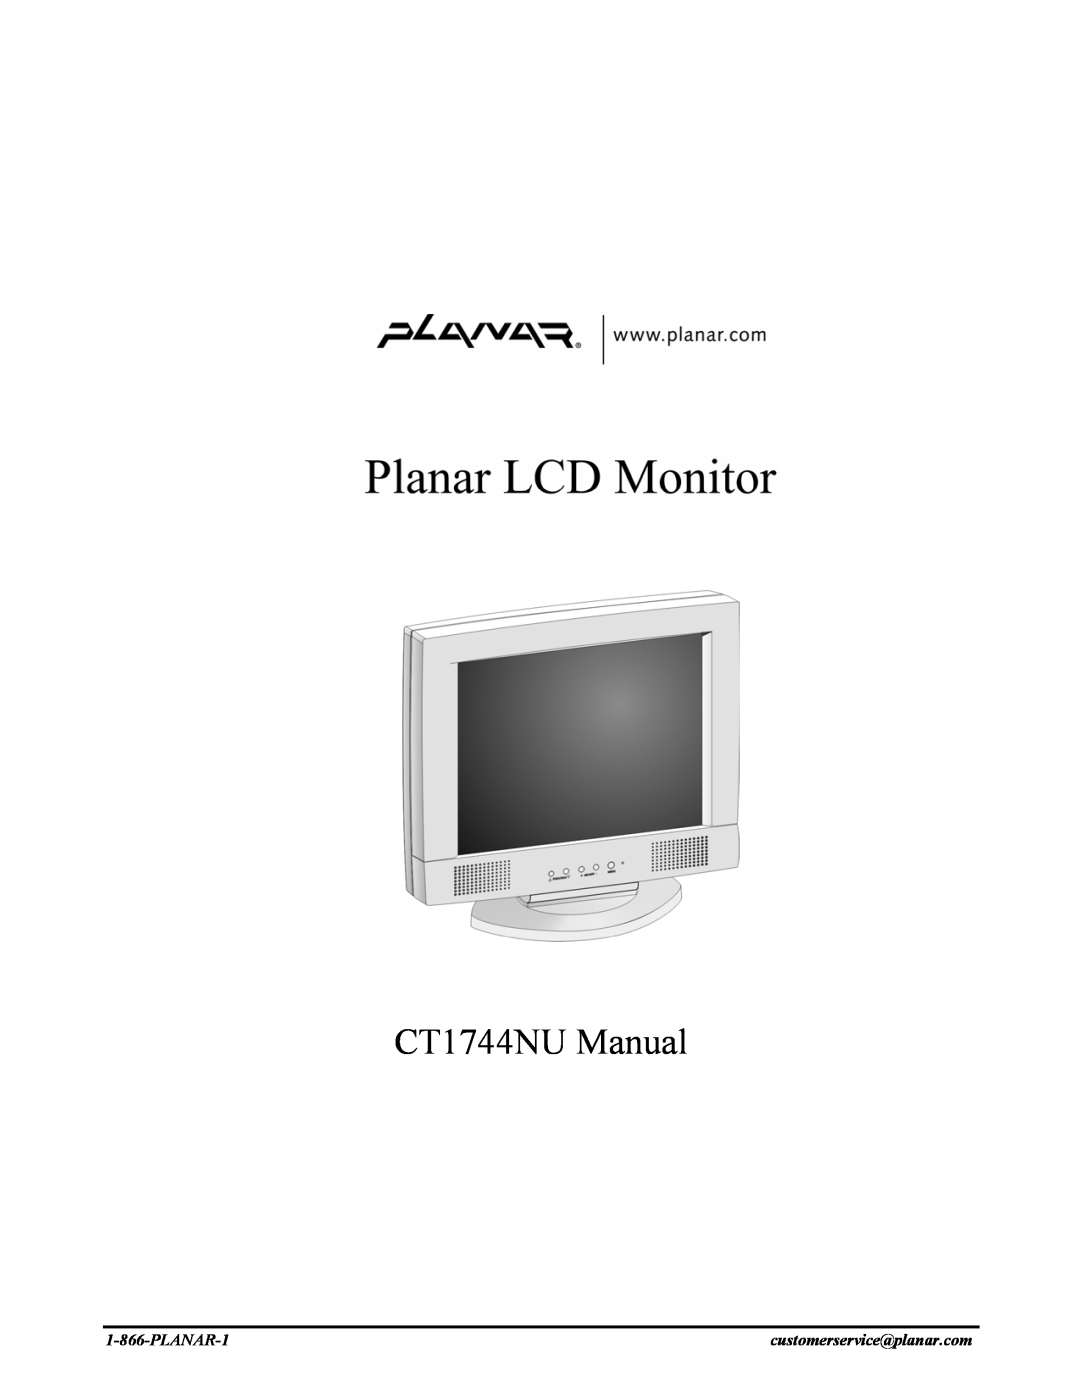 Planar manual CT1744NU Manual, PLANAR-1, customerservice@planar.com 